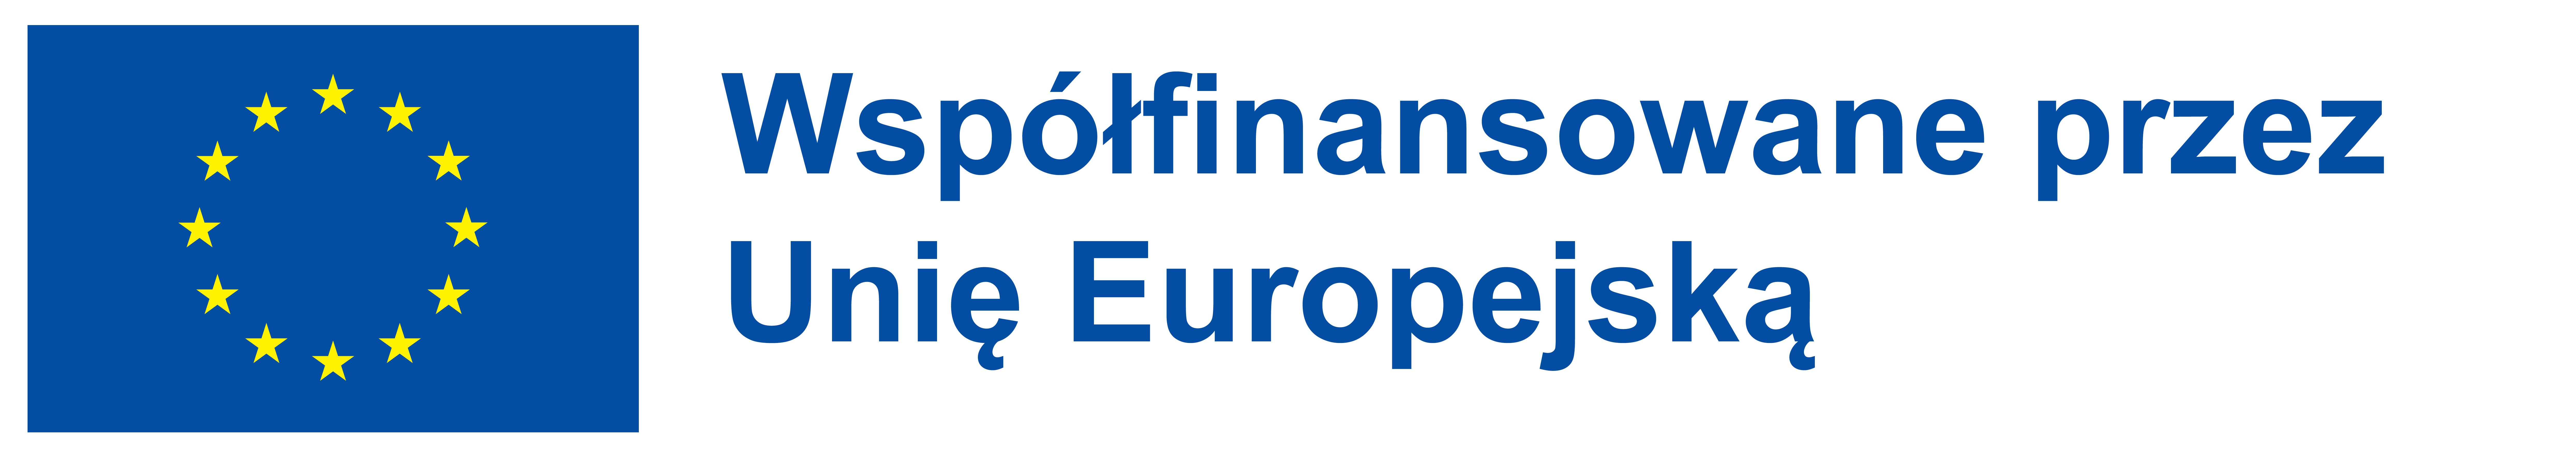 logo wspolfinansowane przez EU